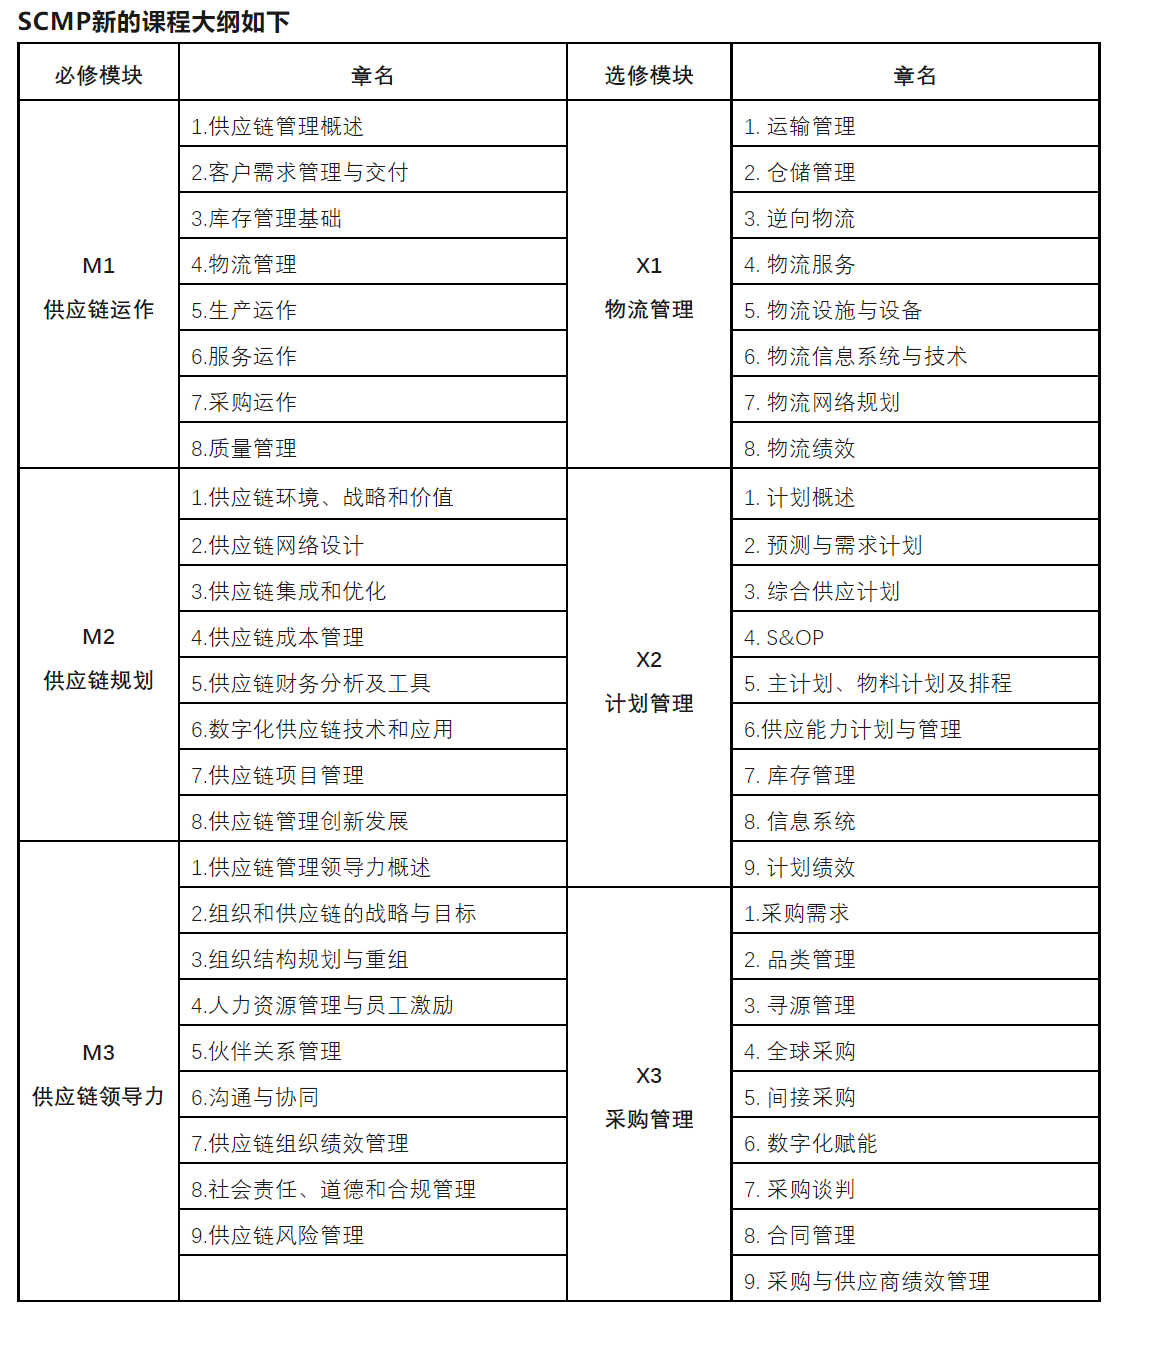 深圳哪有供应链培训SCMP培训？